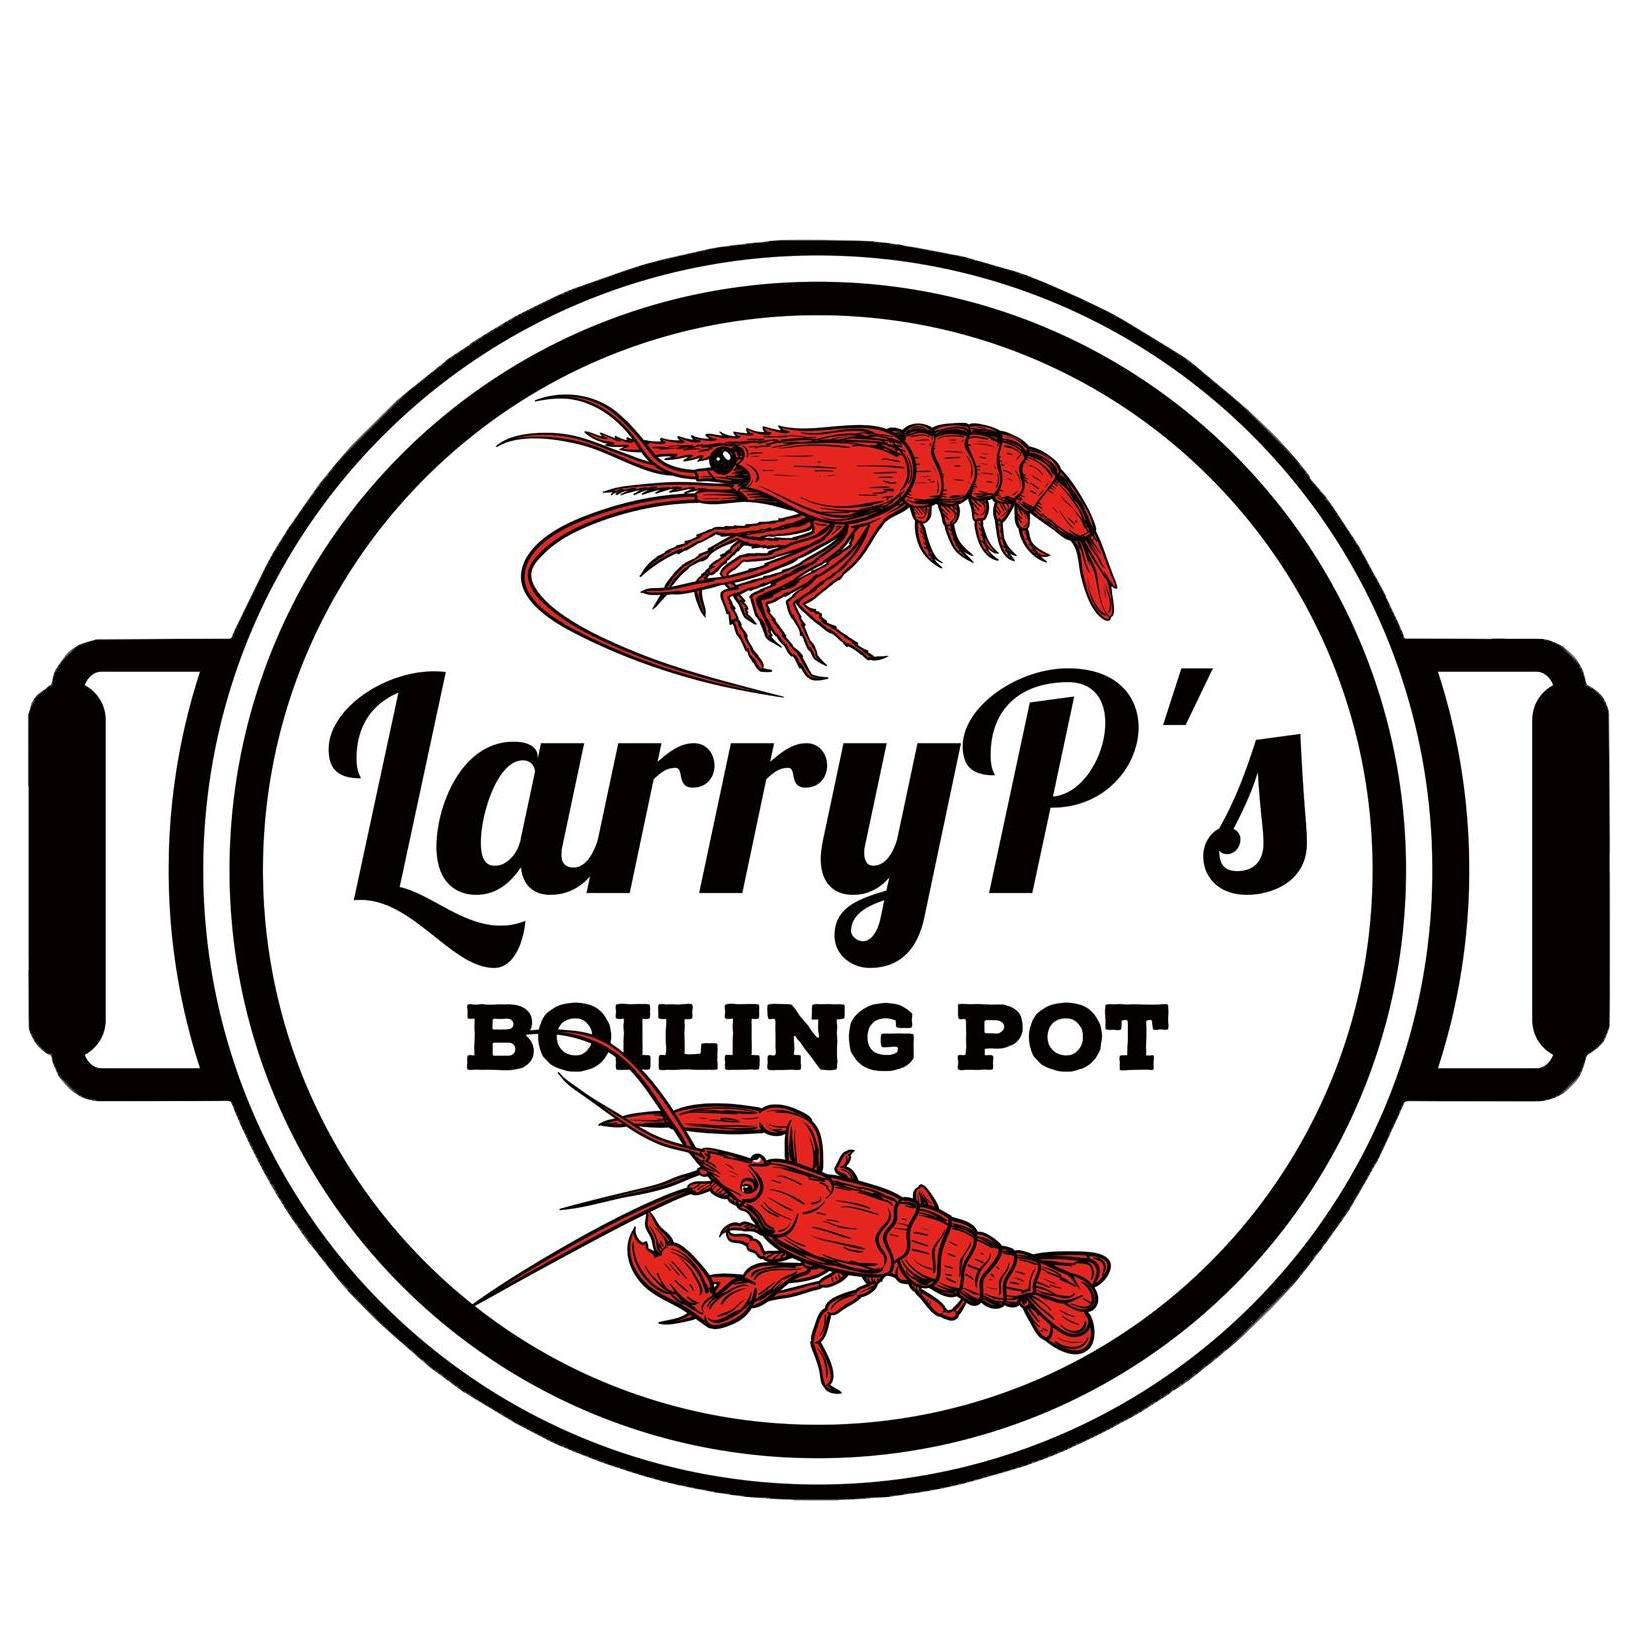 LarryP's Boiling Pot Logo